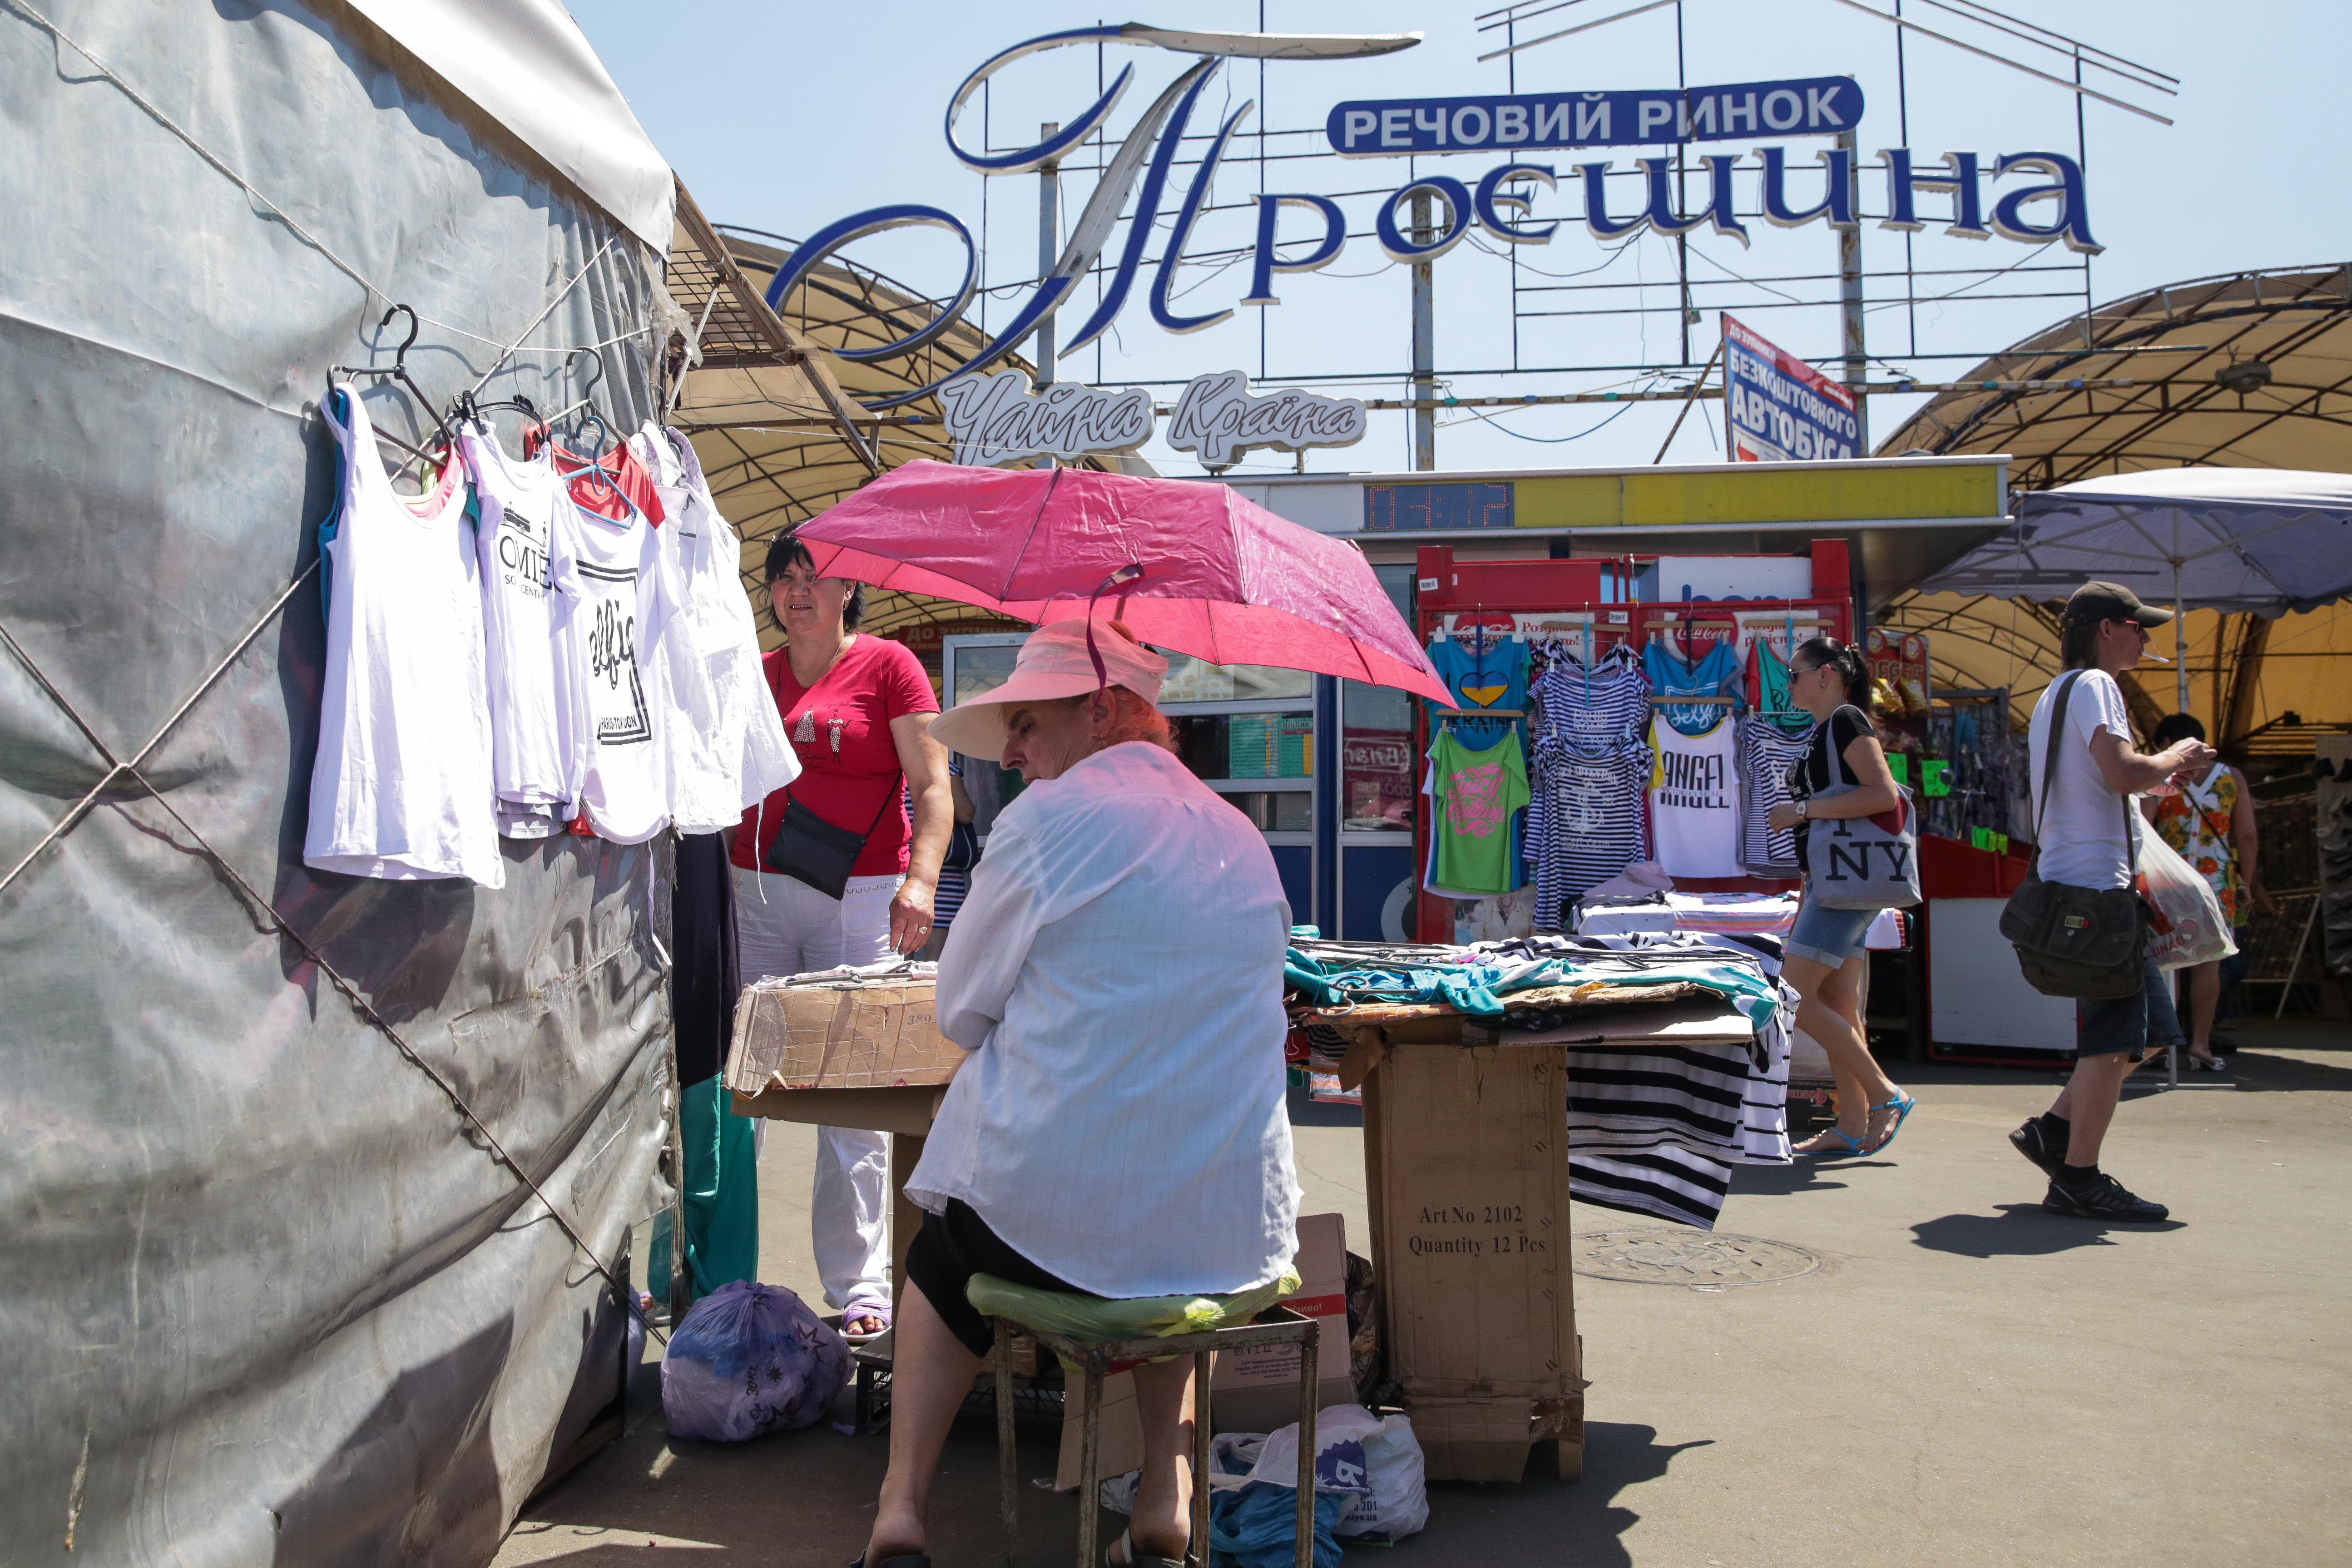 Targowisko, jedno z największych w Kijowie, rozpościera się w centrum dzielnicy. Są tu tysiące blaszanych szczęk, namiotów i hangarów z ciuchami, elektroniką, towarami z Turcji i Dalekiego Wschodu. Z powodu wysokiego kursu dolara brakuje jednak kupujących.